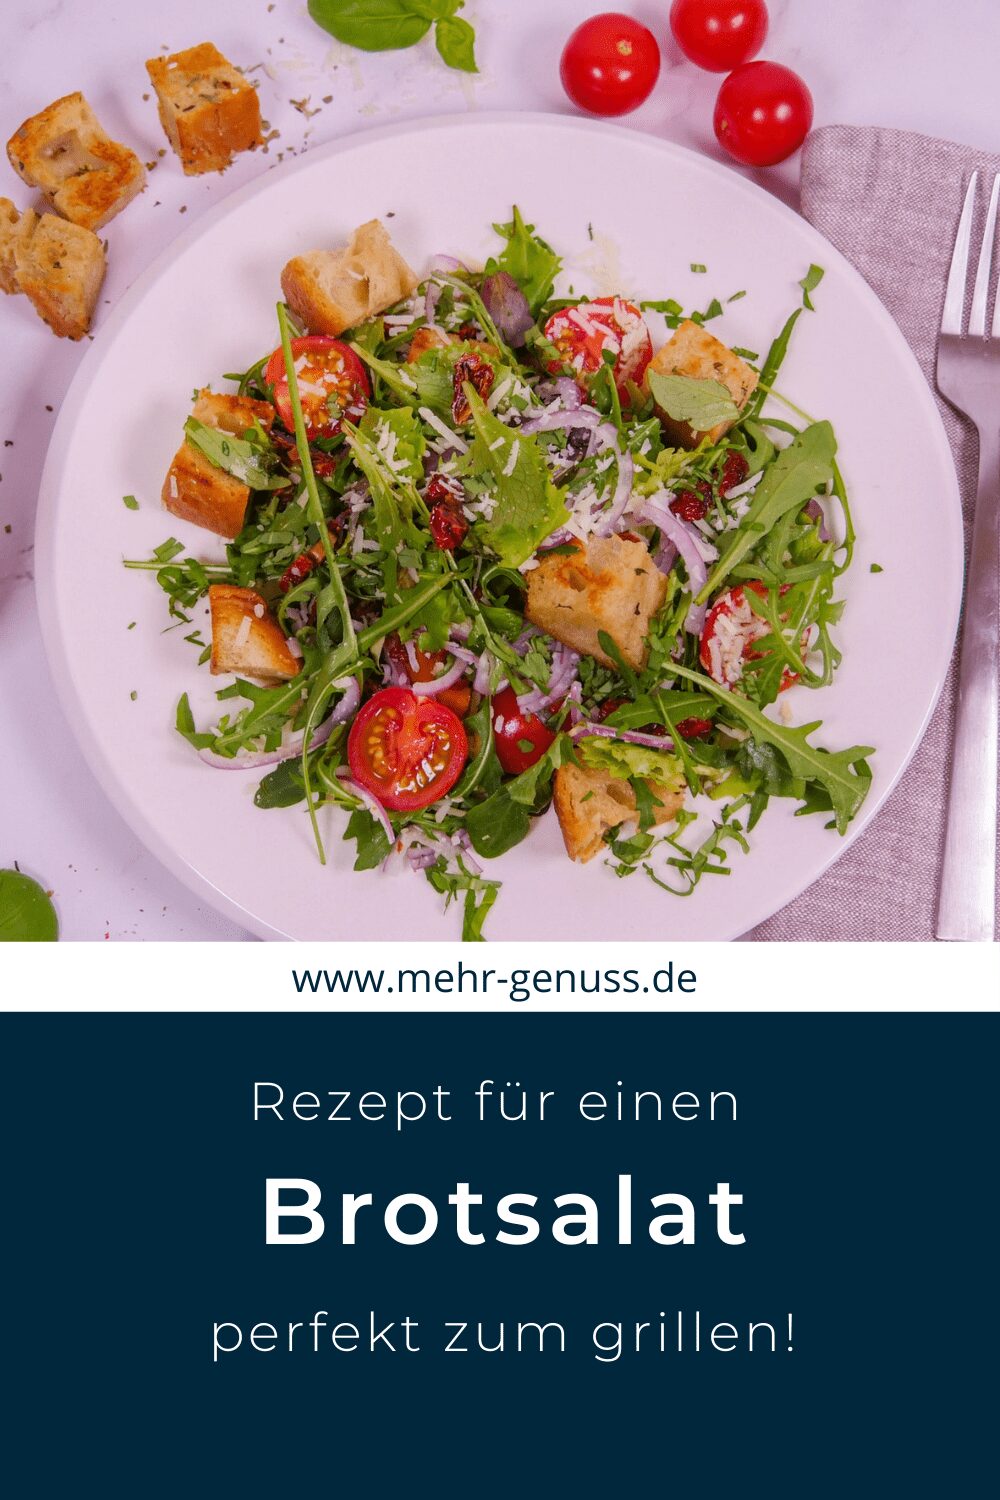 Brotsalat - Pinterest